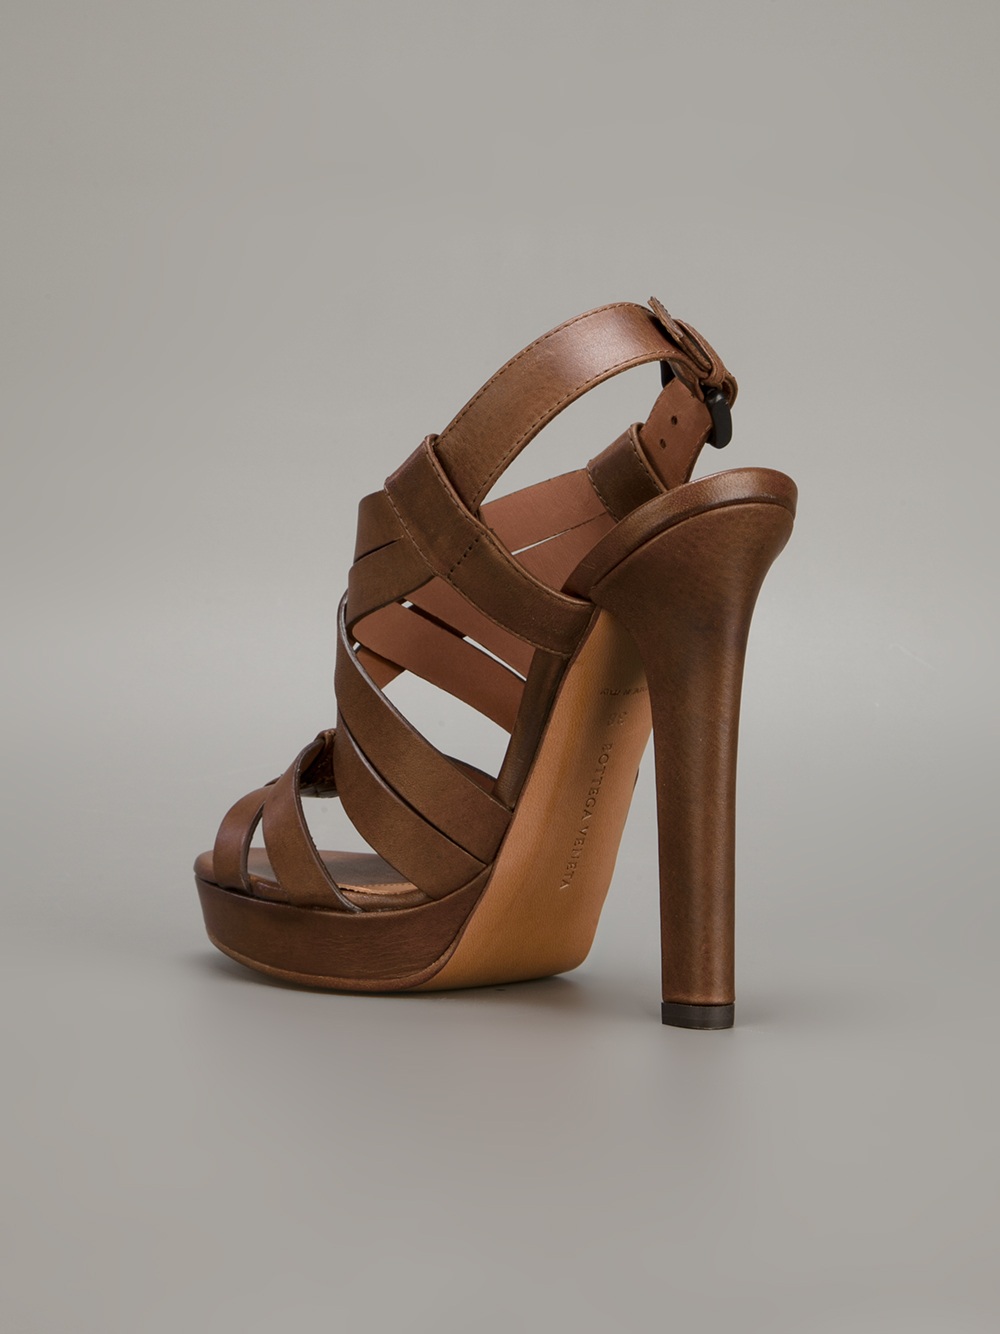 Bottega Veneta Strappy Sandal in Brown - Lyst